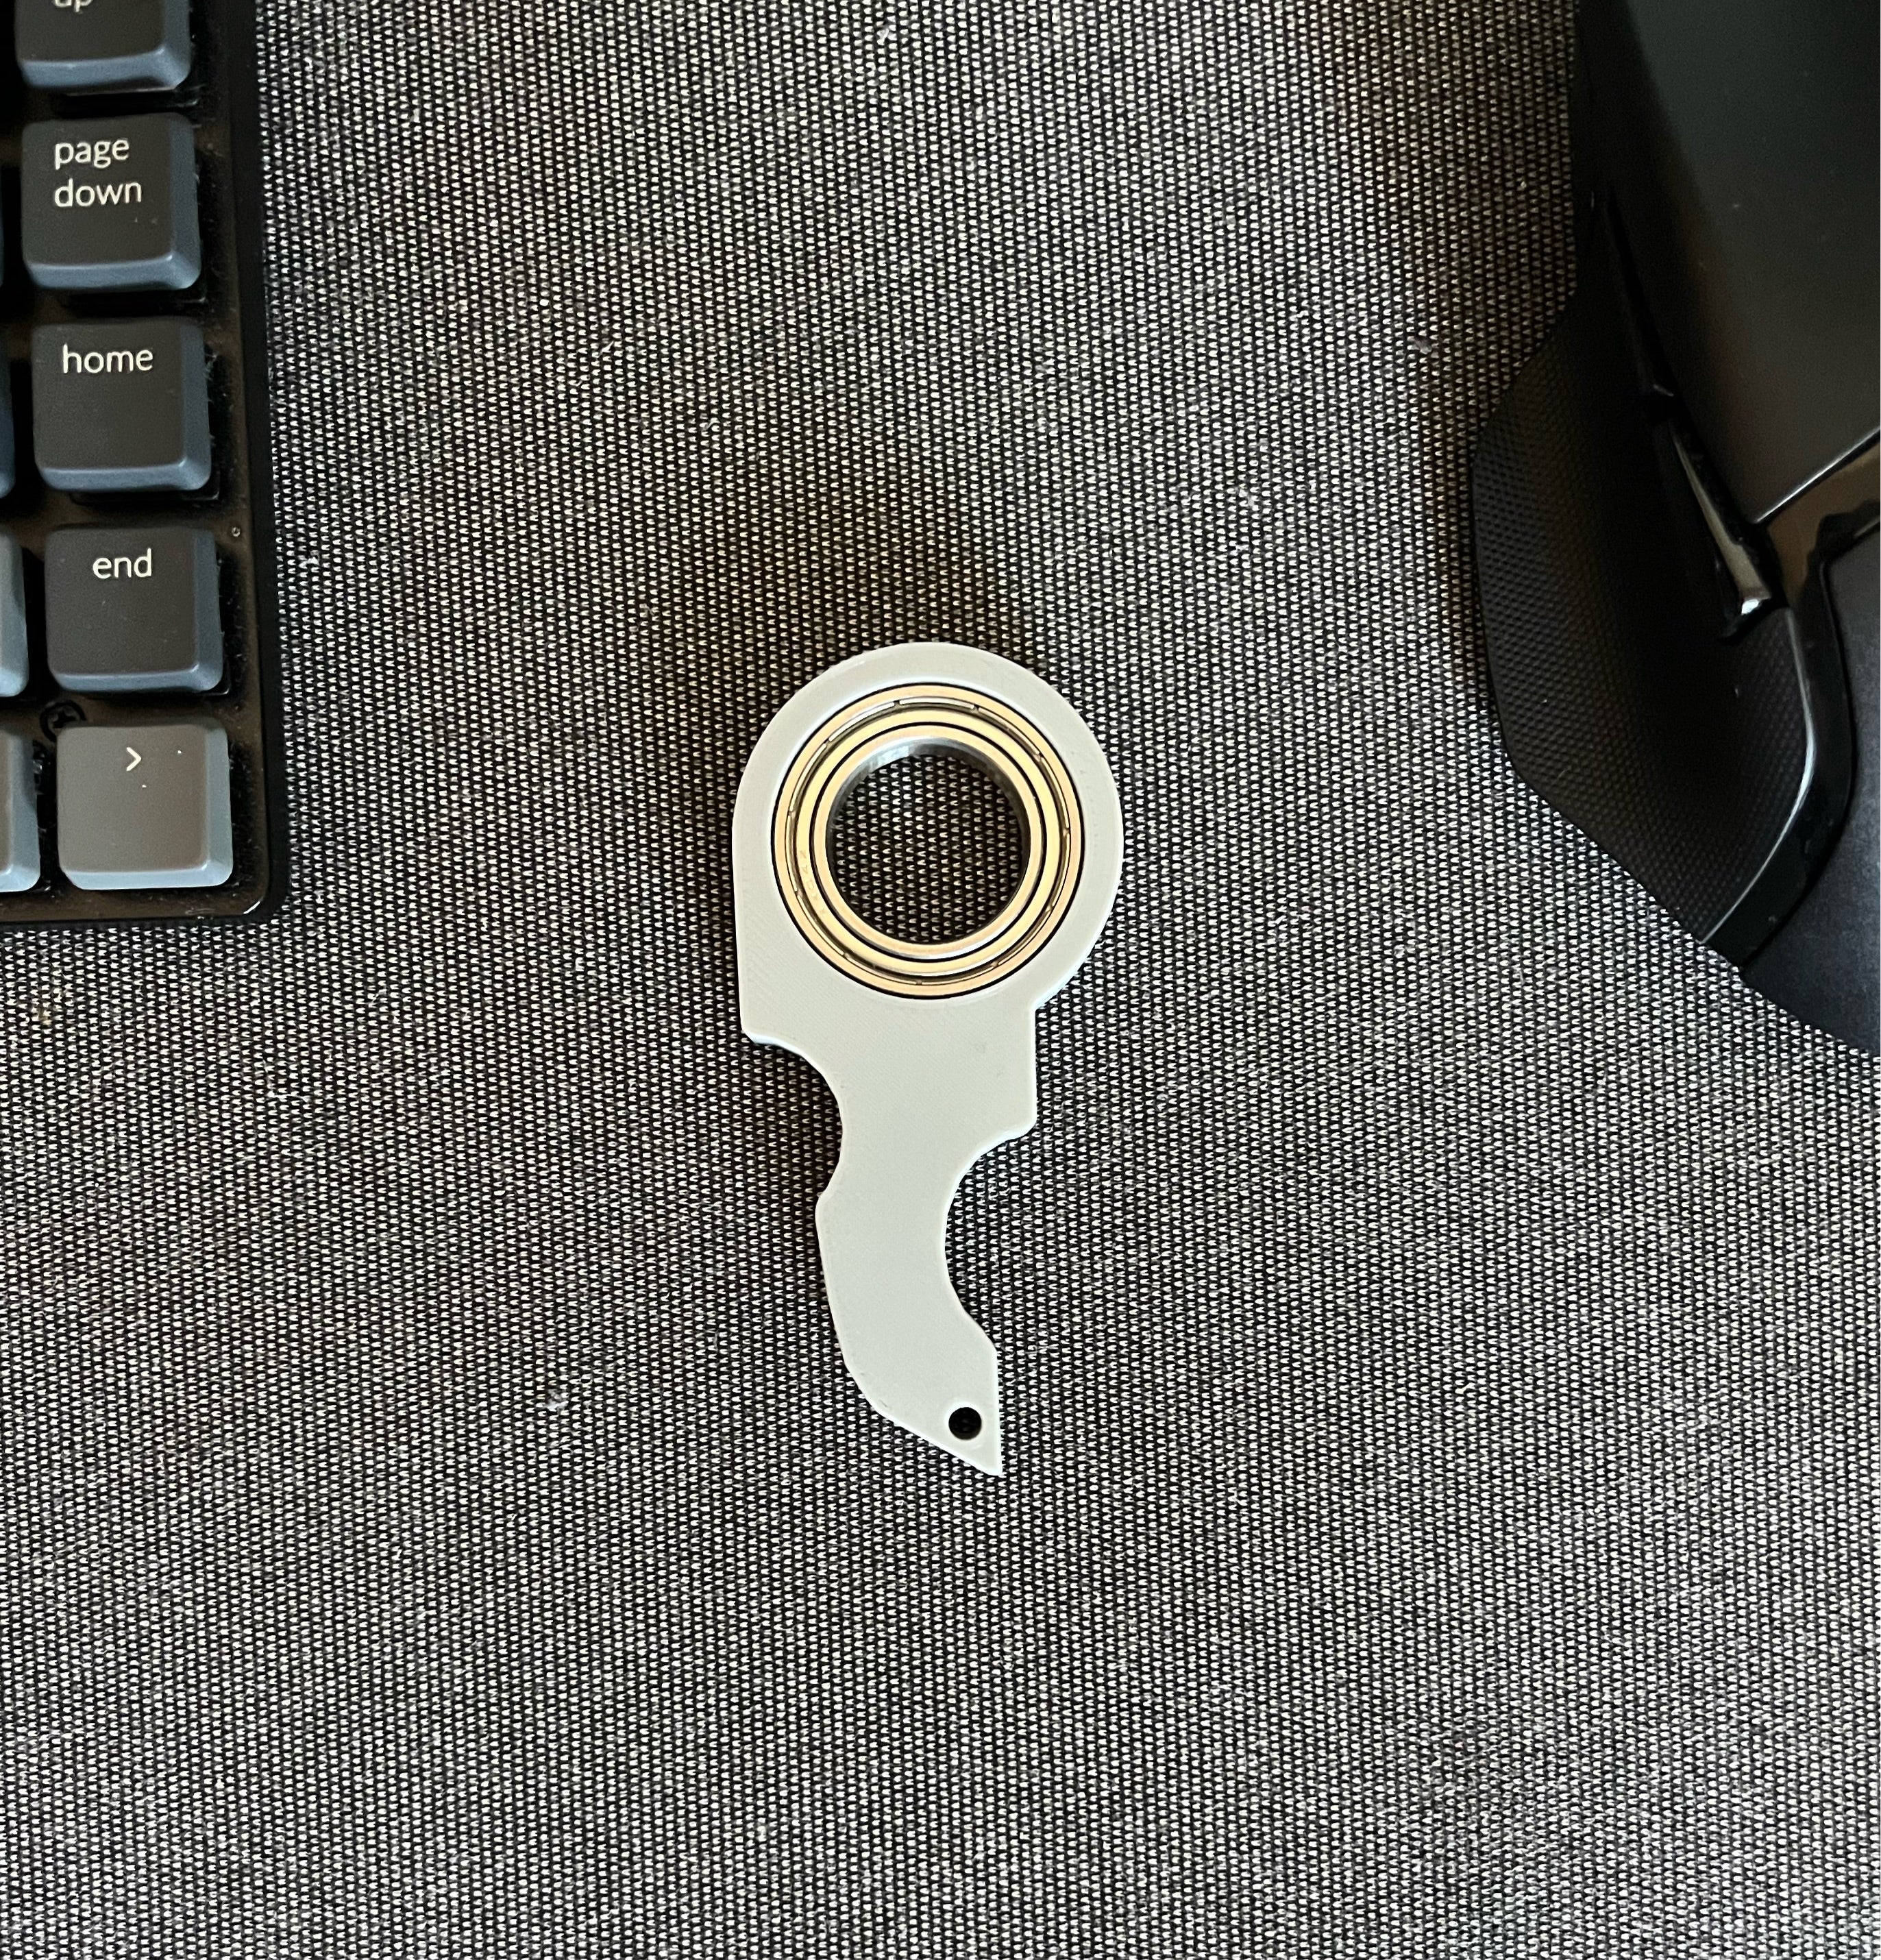 Karambit key spinner Keyrambit by HorusTheForest